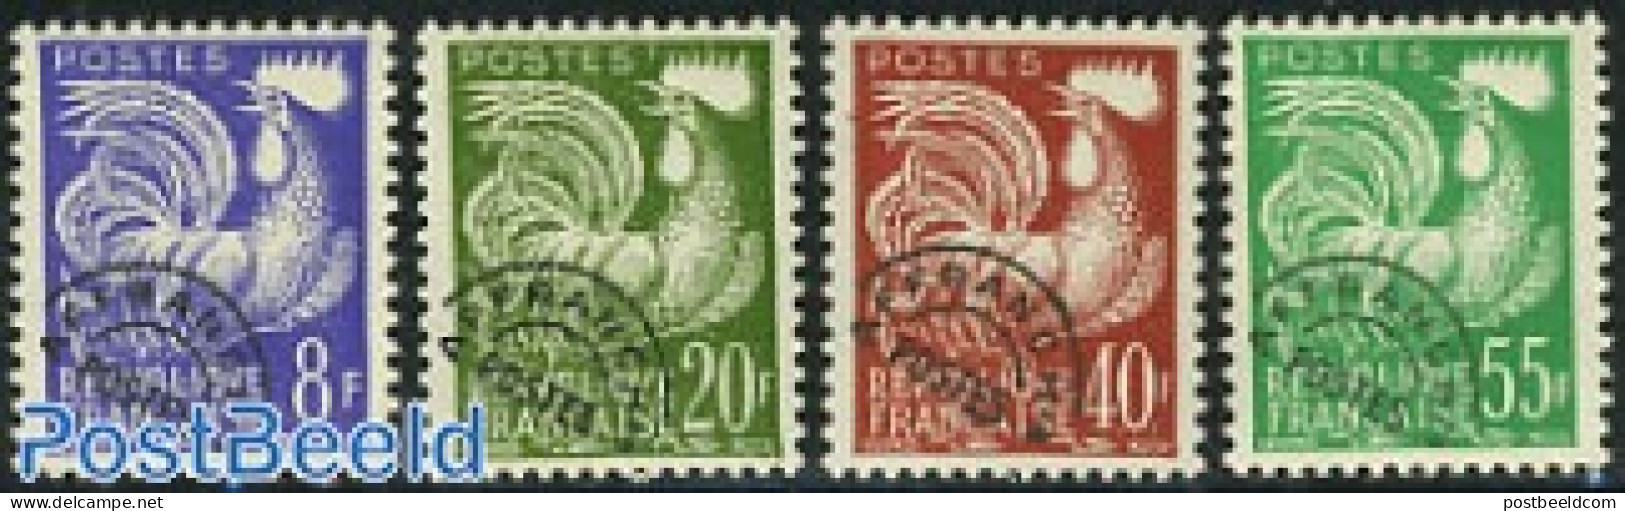 France 1959 Precancels 4v, Mint NH, Nature - Poultry - Unused Stamps